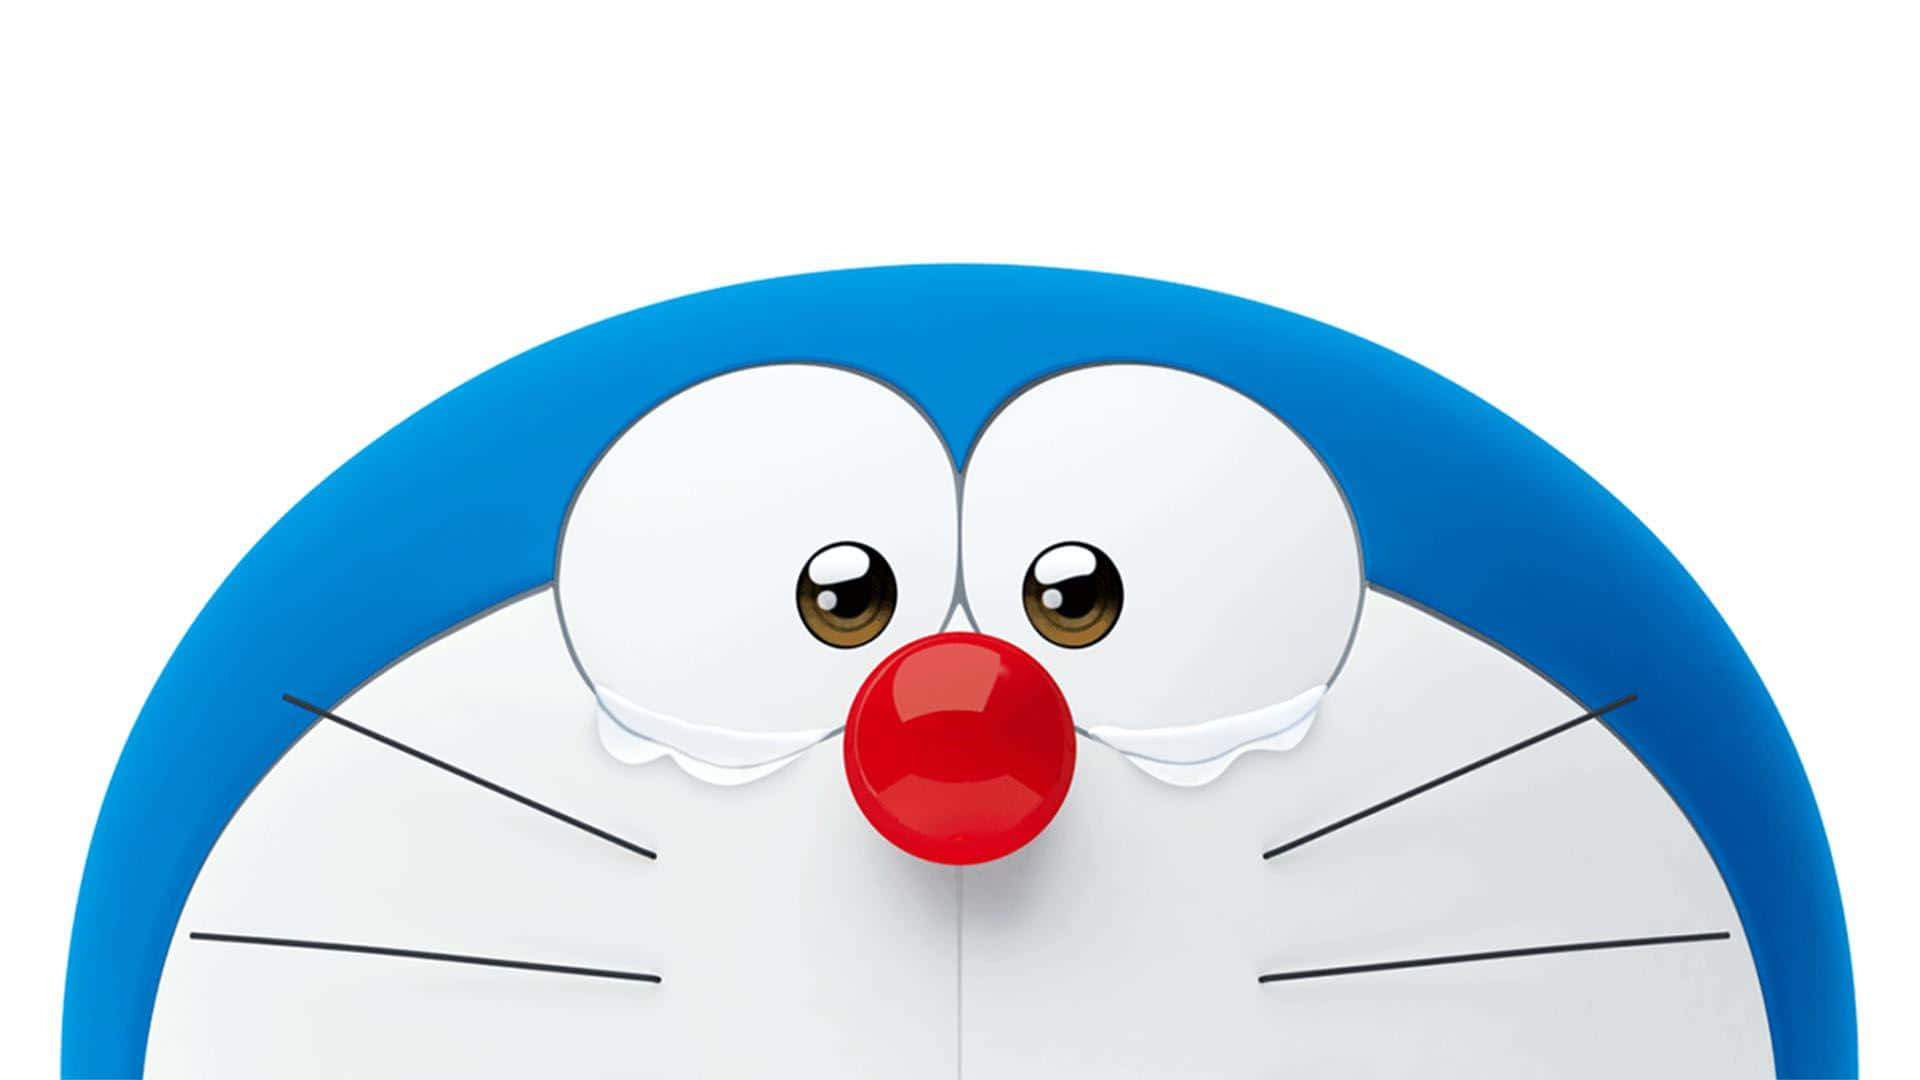 Doraemonsteht Stolz Da Mit Seinem Ikonischen Blauen Körper Und Hut.